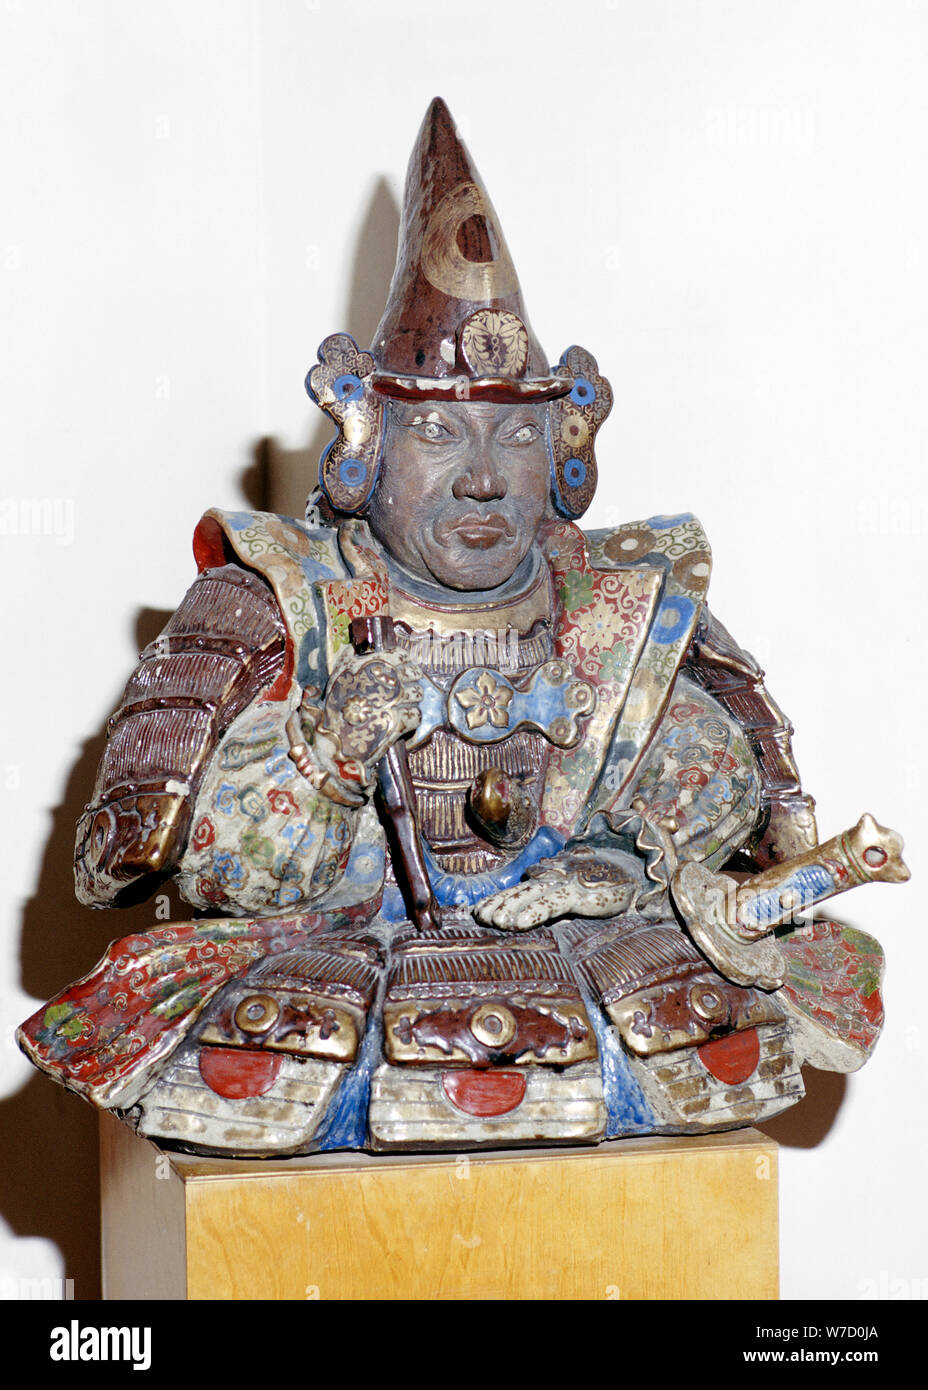 La figure d'un guerrier samouraï, Japonais. Artiste : Inconnu Banque D'Images